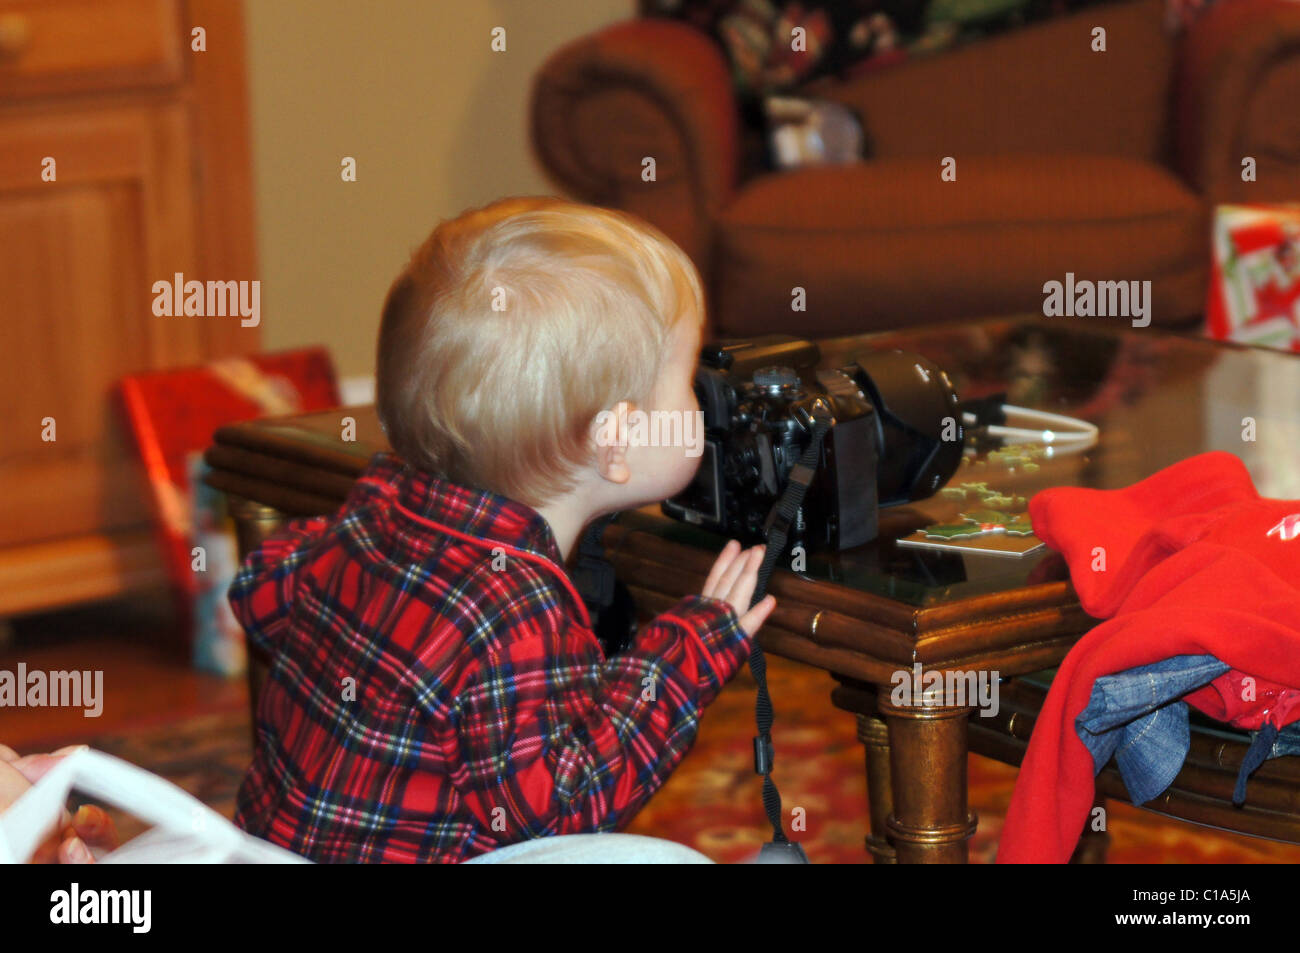 Junge durch den Suchermodus der Kamera zu Weihnachten suchen. Stockfoto